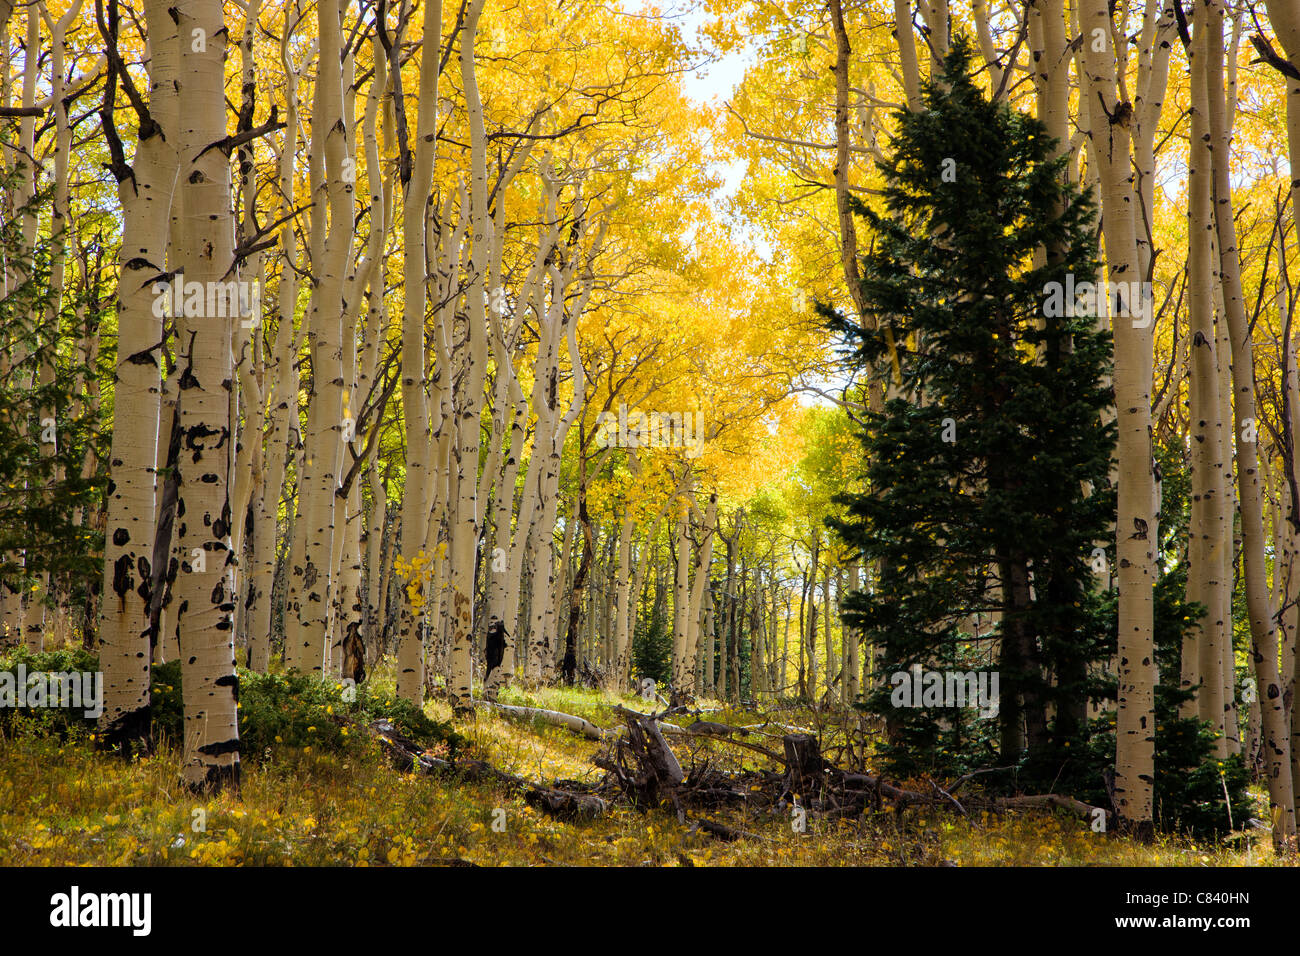 Aspen forest in colori autunnali nei pressi di cabina vuota sentiero, San Isabel National Forest, Colorado, STATI UNITI D'AMERICA Foto Stock